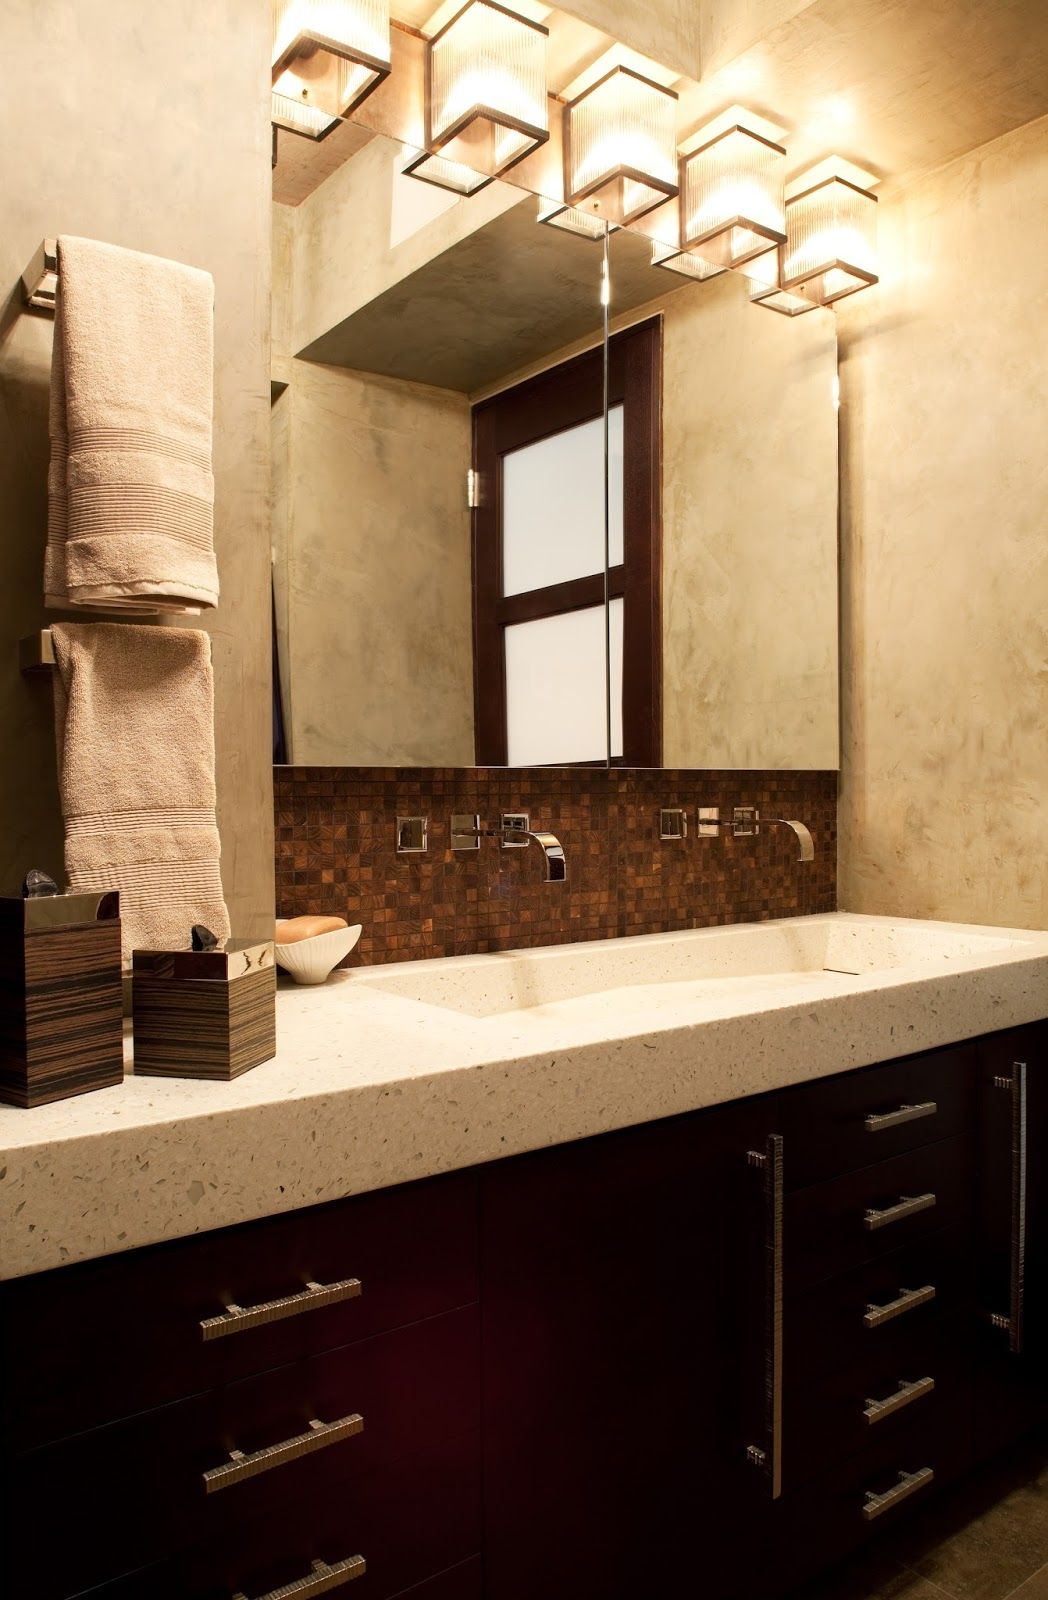 Chandelier Bathroom Vanity Lighting Interiordesignew With Regard To Chandelier Bathroom Ceiling Lights (View 7 of 25)